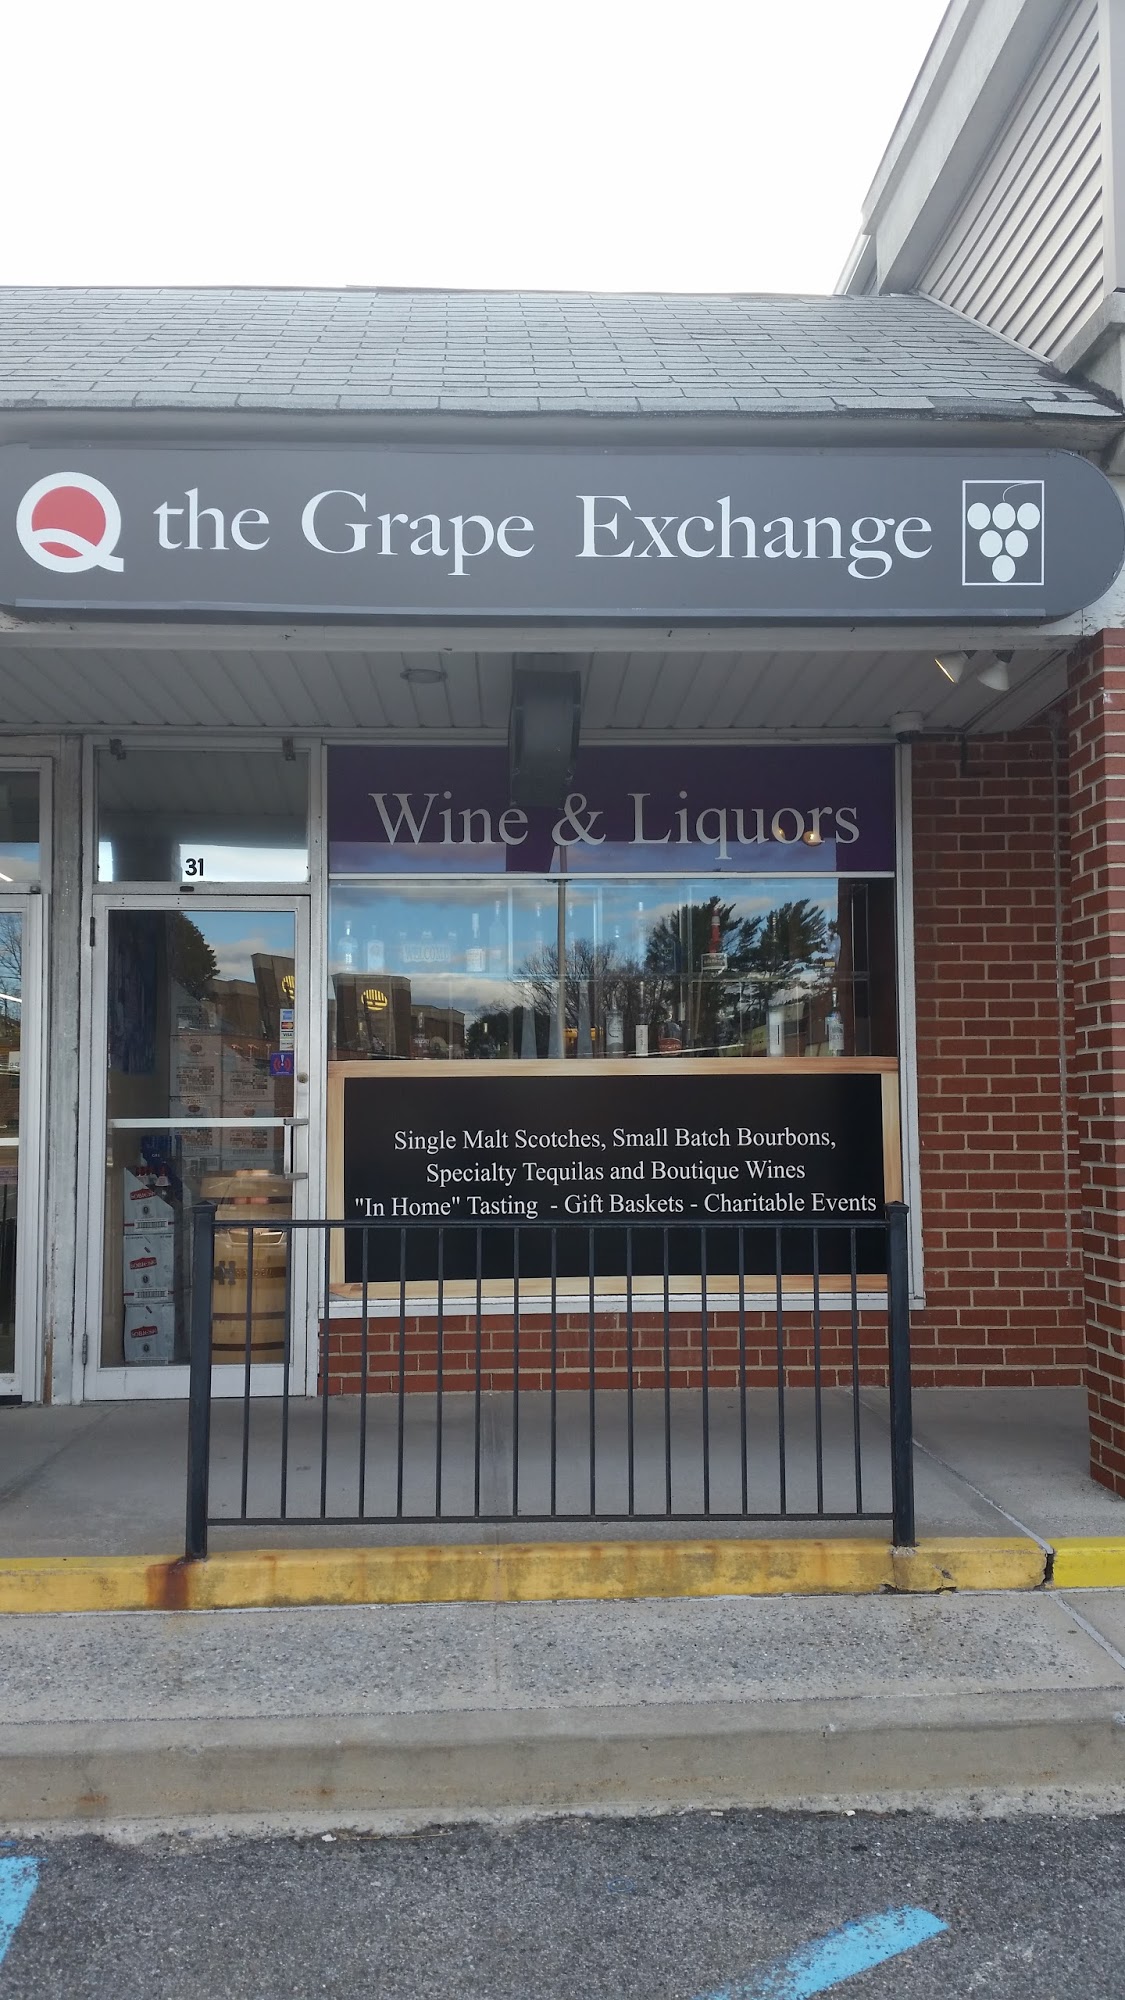 The Grape Exchange